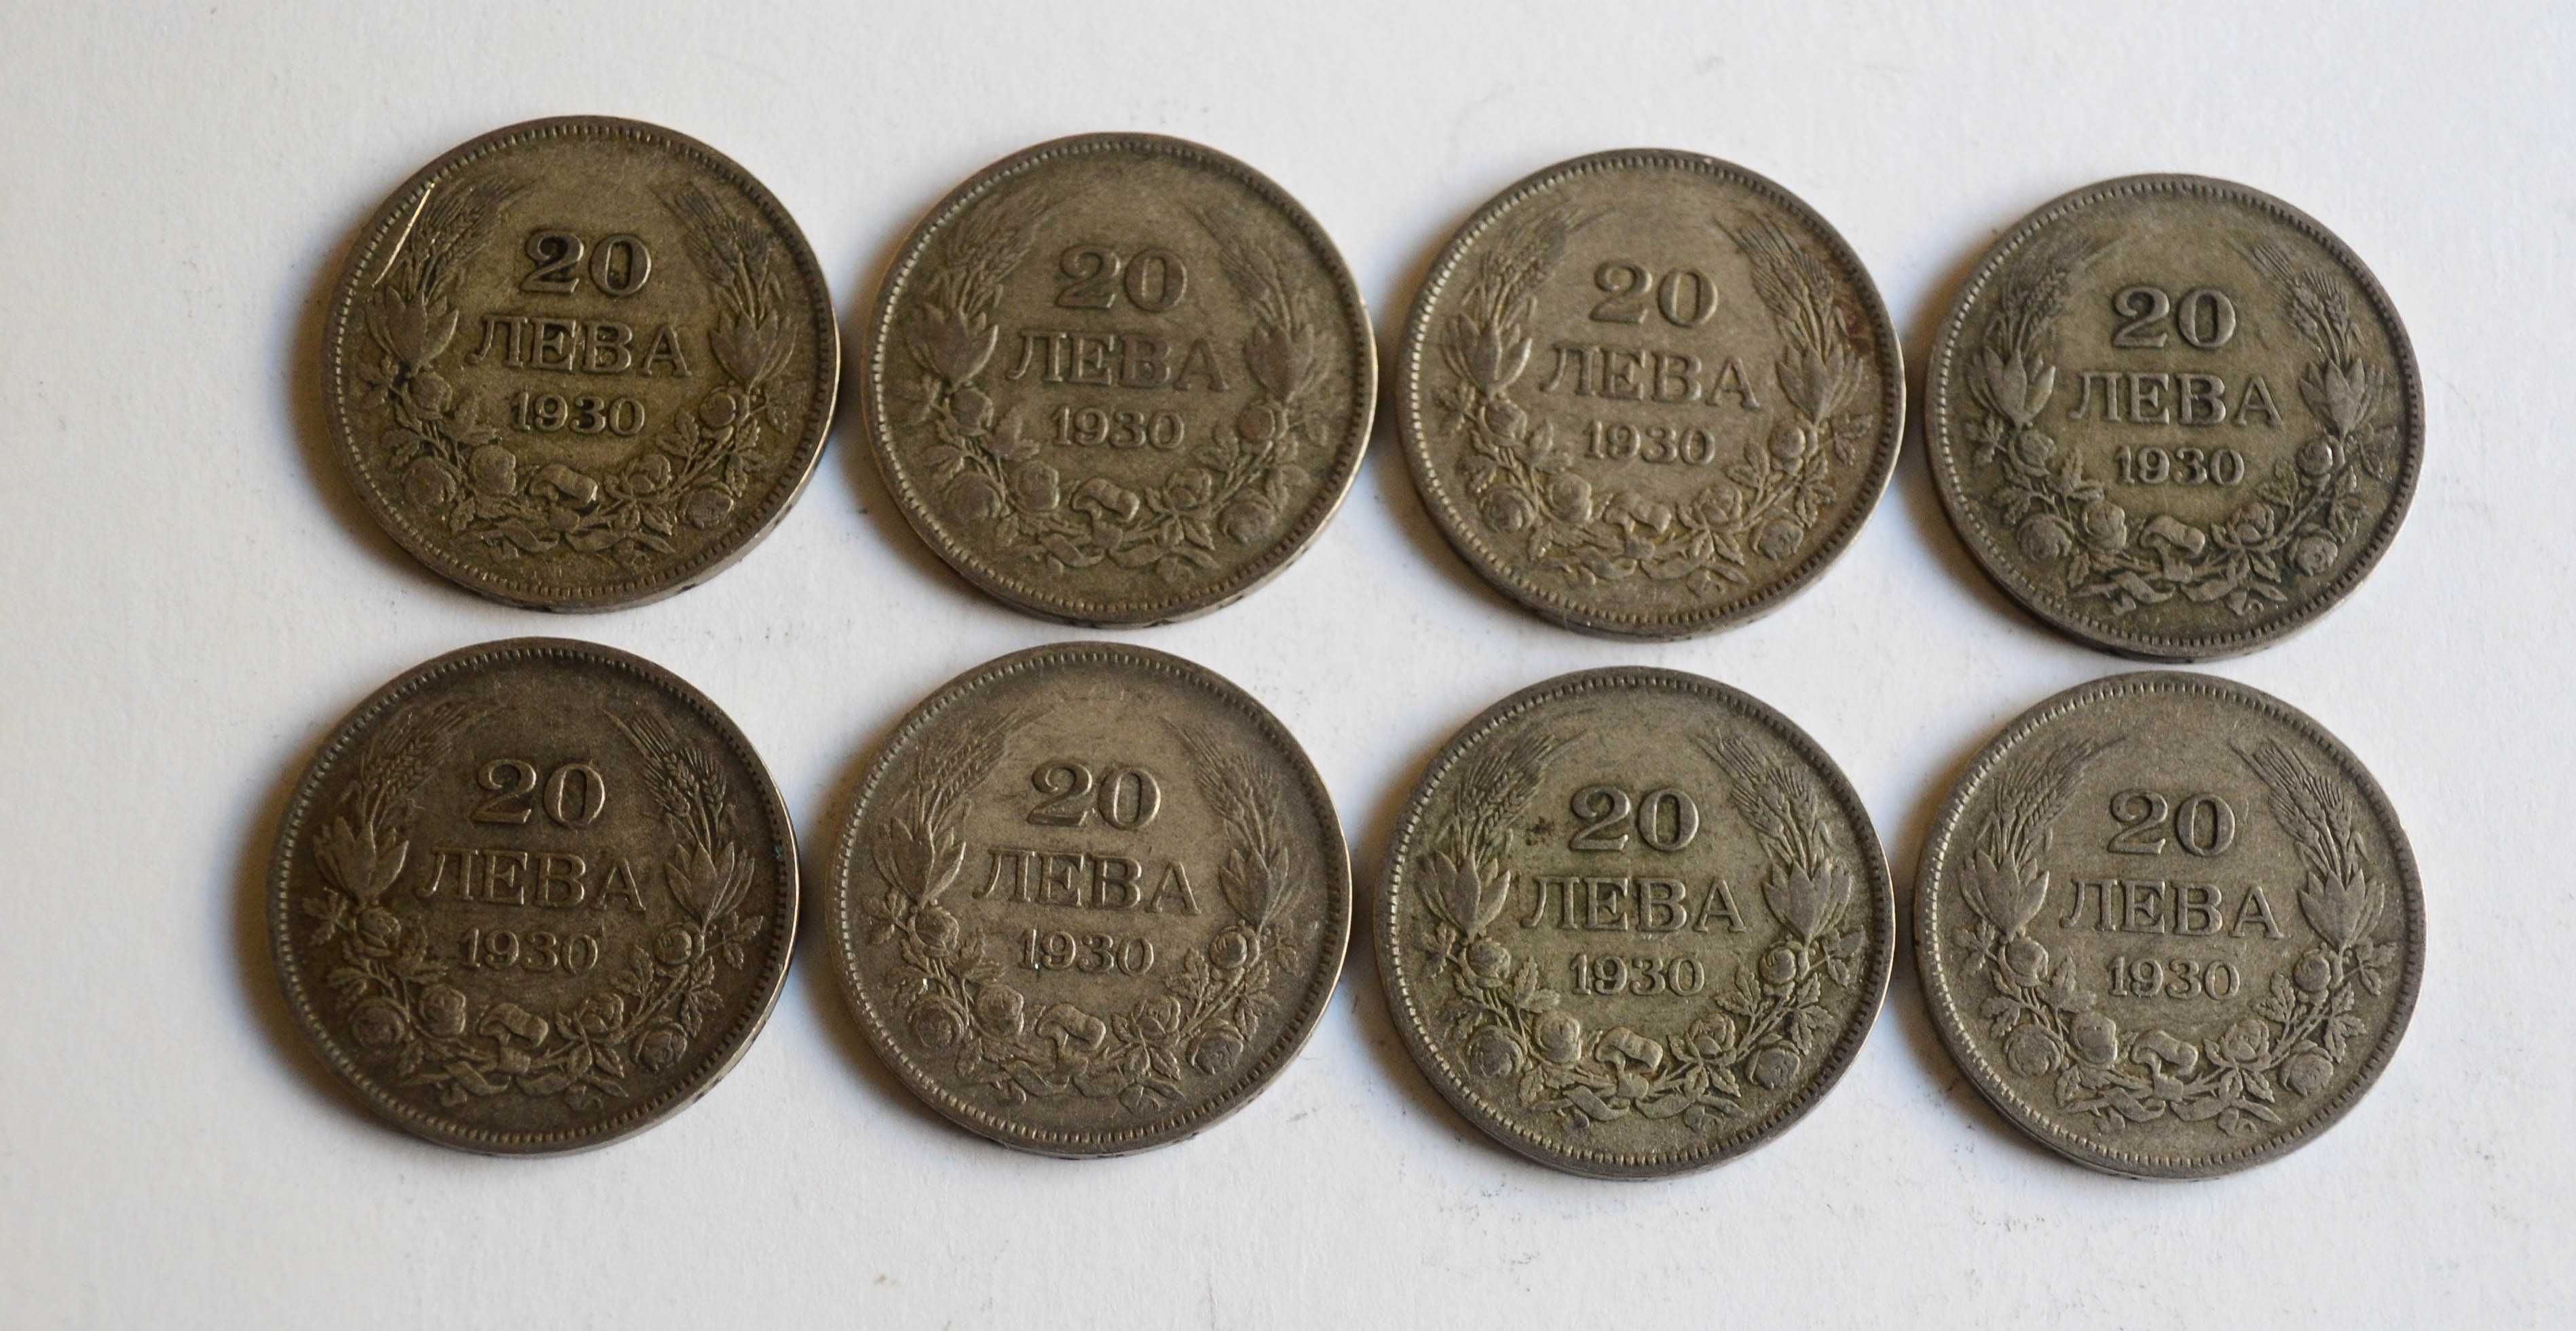 Лот монети 20 лева от 1930 година - сребро